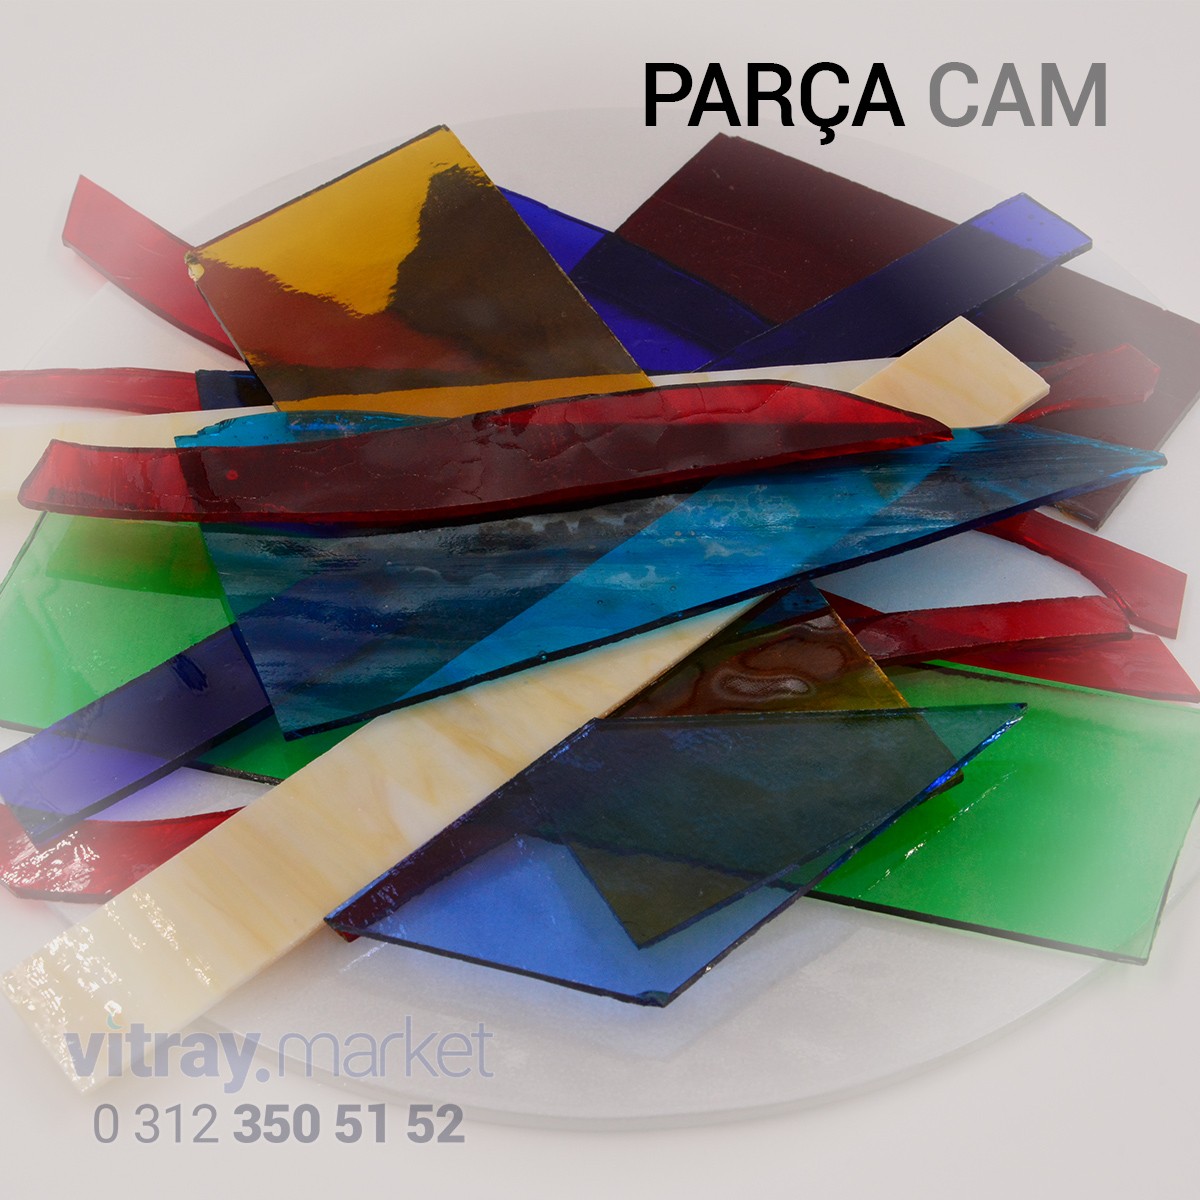 Parça Cam - (Opal - Katedral Vitray Cam) Karışık Renk / KG